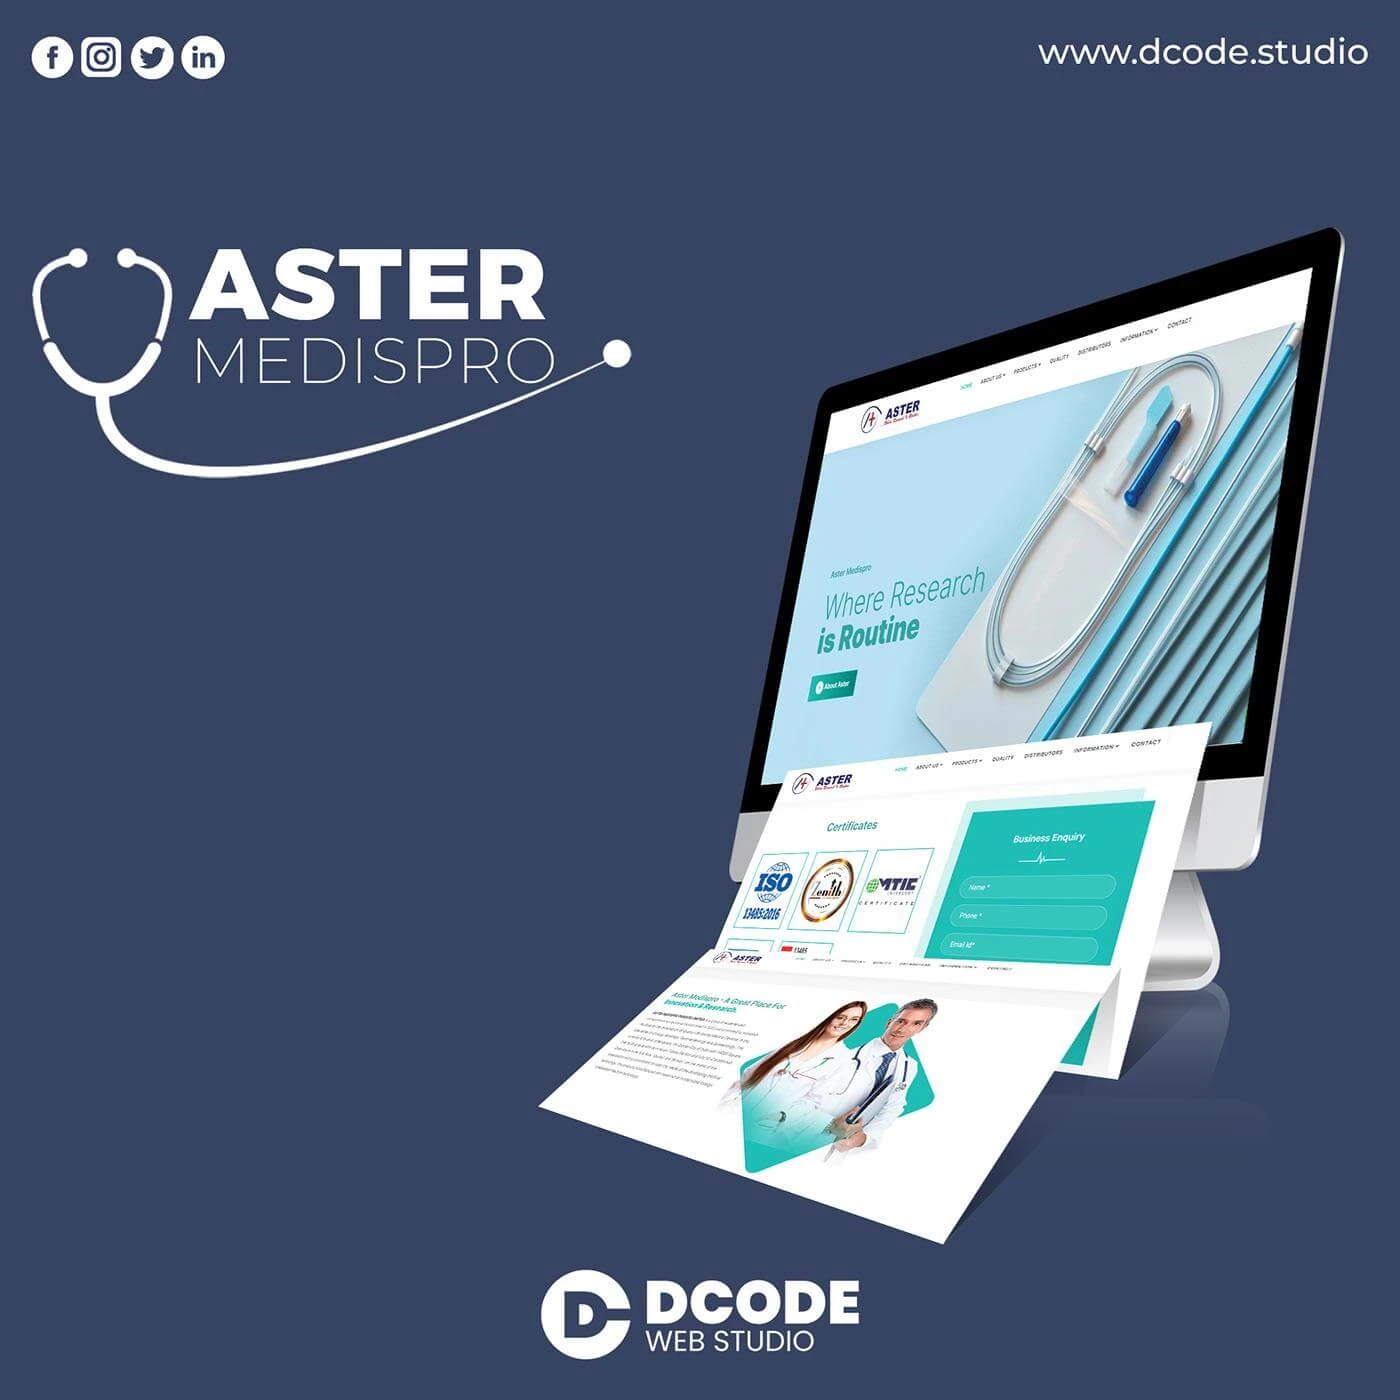 Aster Medispro Mockup in Laptop, Mobile, and Tablet sizes, Aster Medispro Website Mockup created by Dcode Web Studio, Aster Medispro Website Designed and Developed by Dcode Web Studio Ahmedabad.